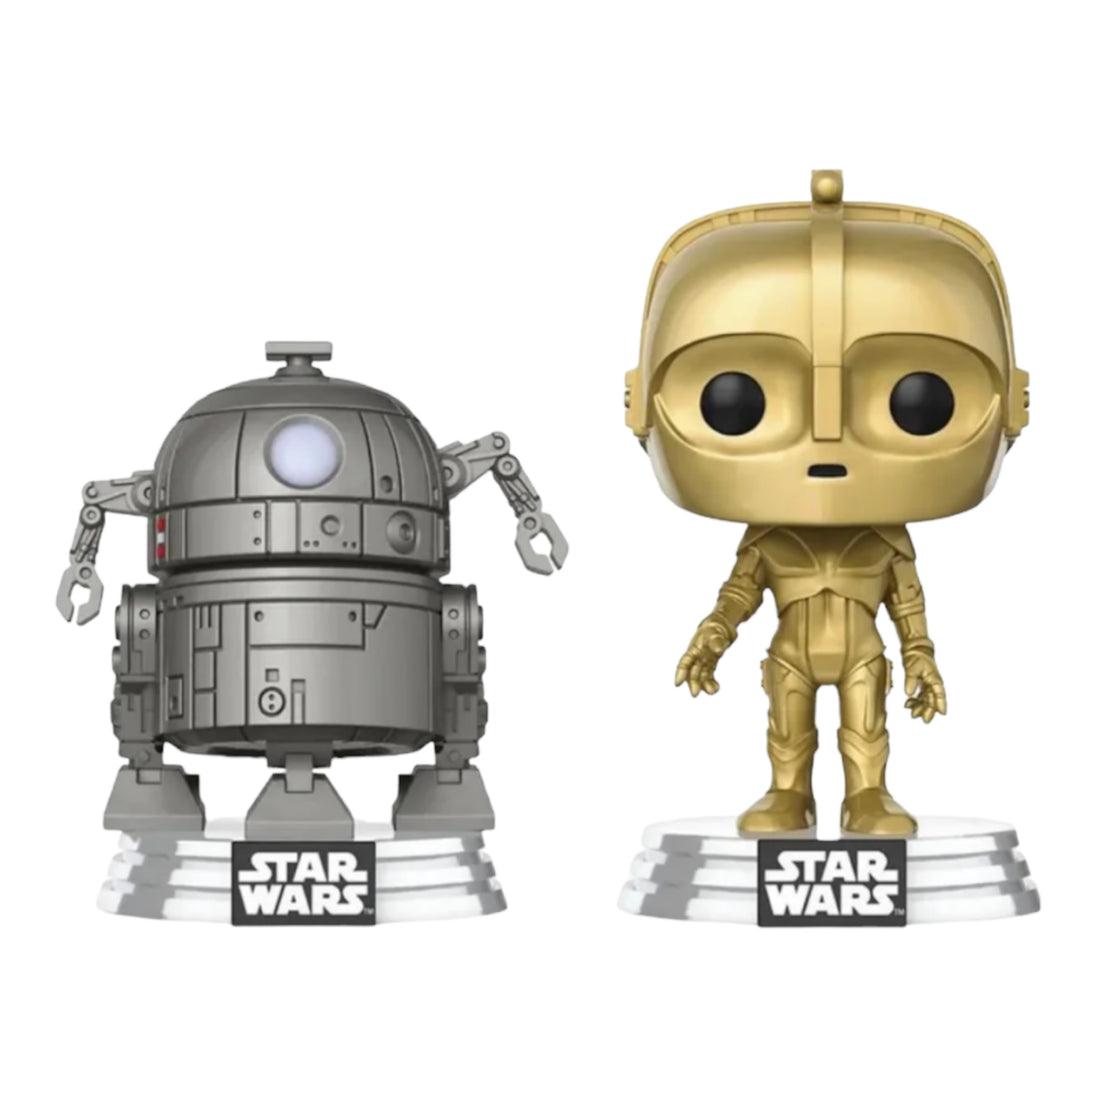 Star Wars C-3Po & R2-D2 Funko Pop 2 Pack